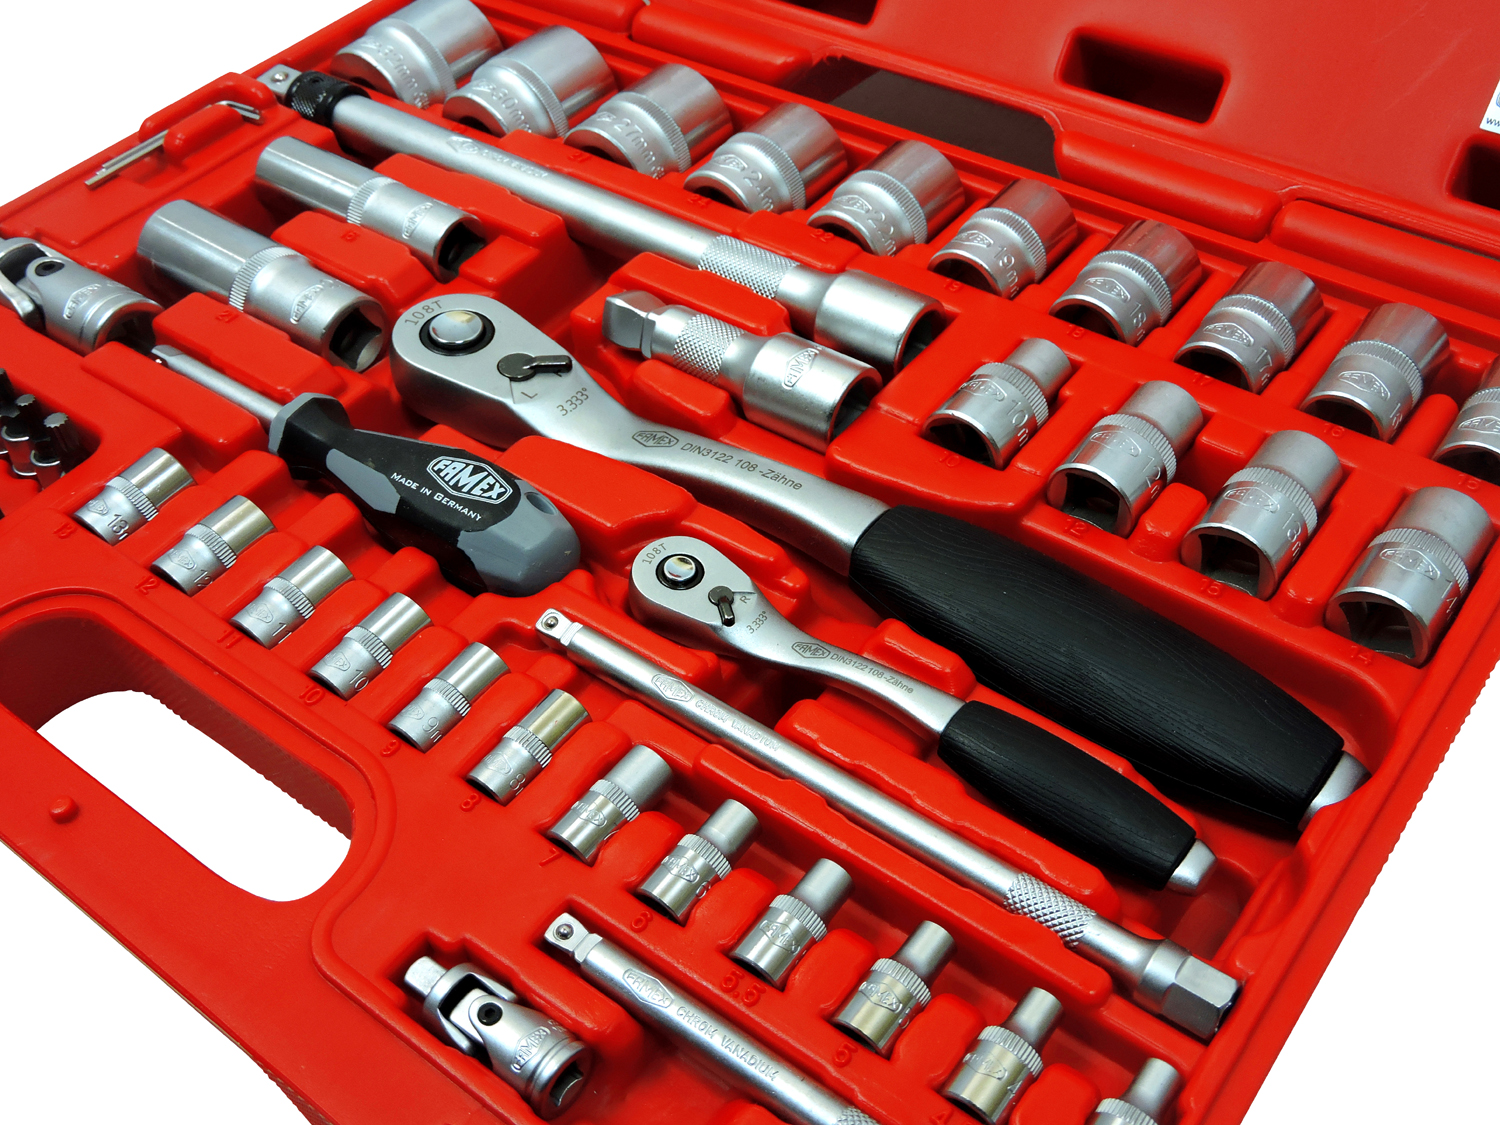 Werkzeuge günstig online kaufen - FAMEX 429-18 Werkzeugkoffer mit  Werkzeugbestückung